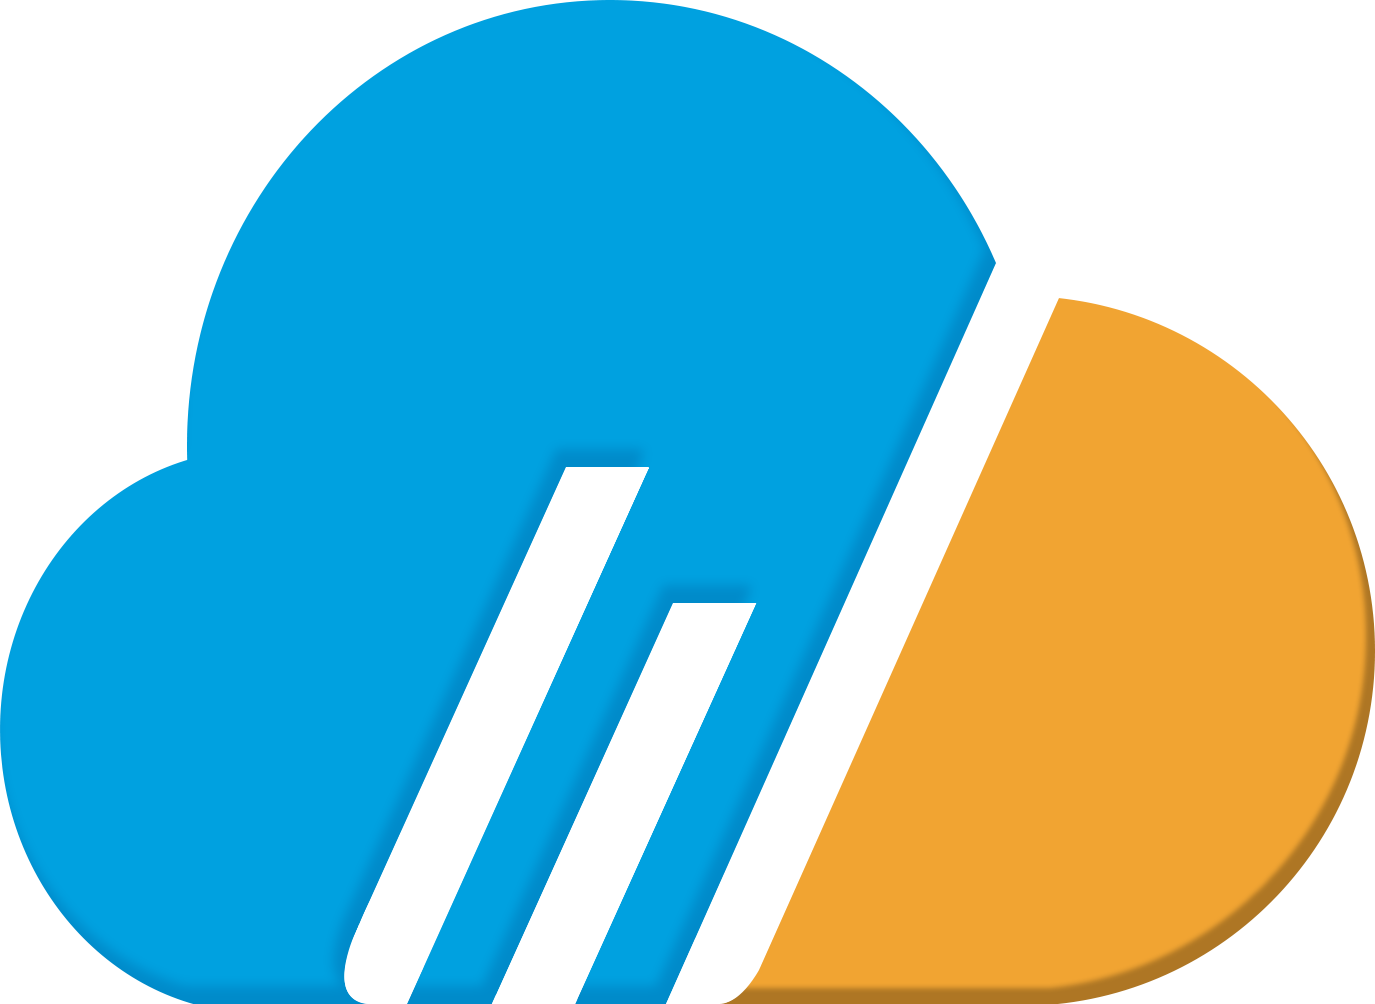 Webner Logo